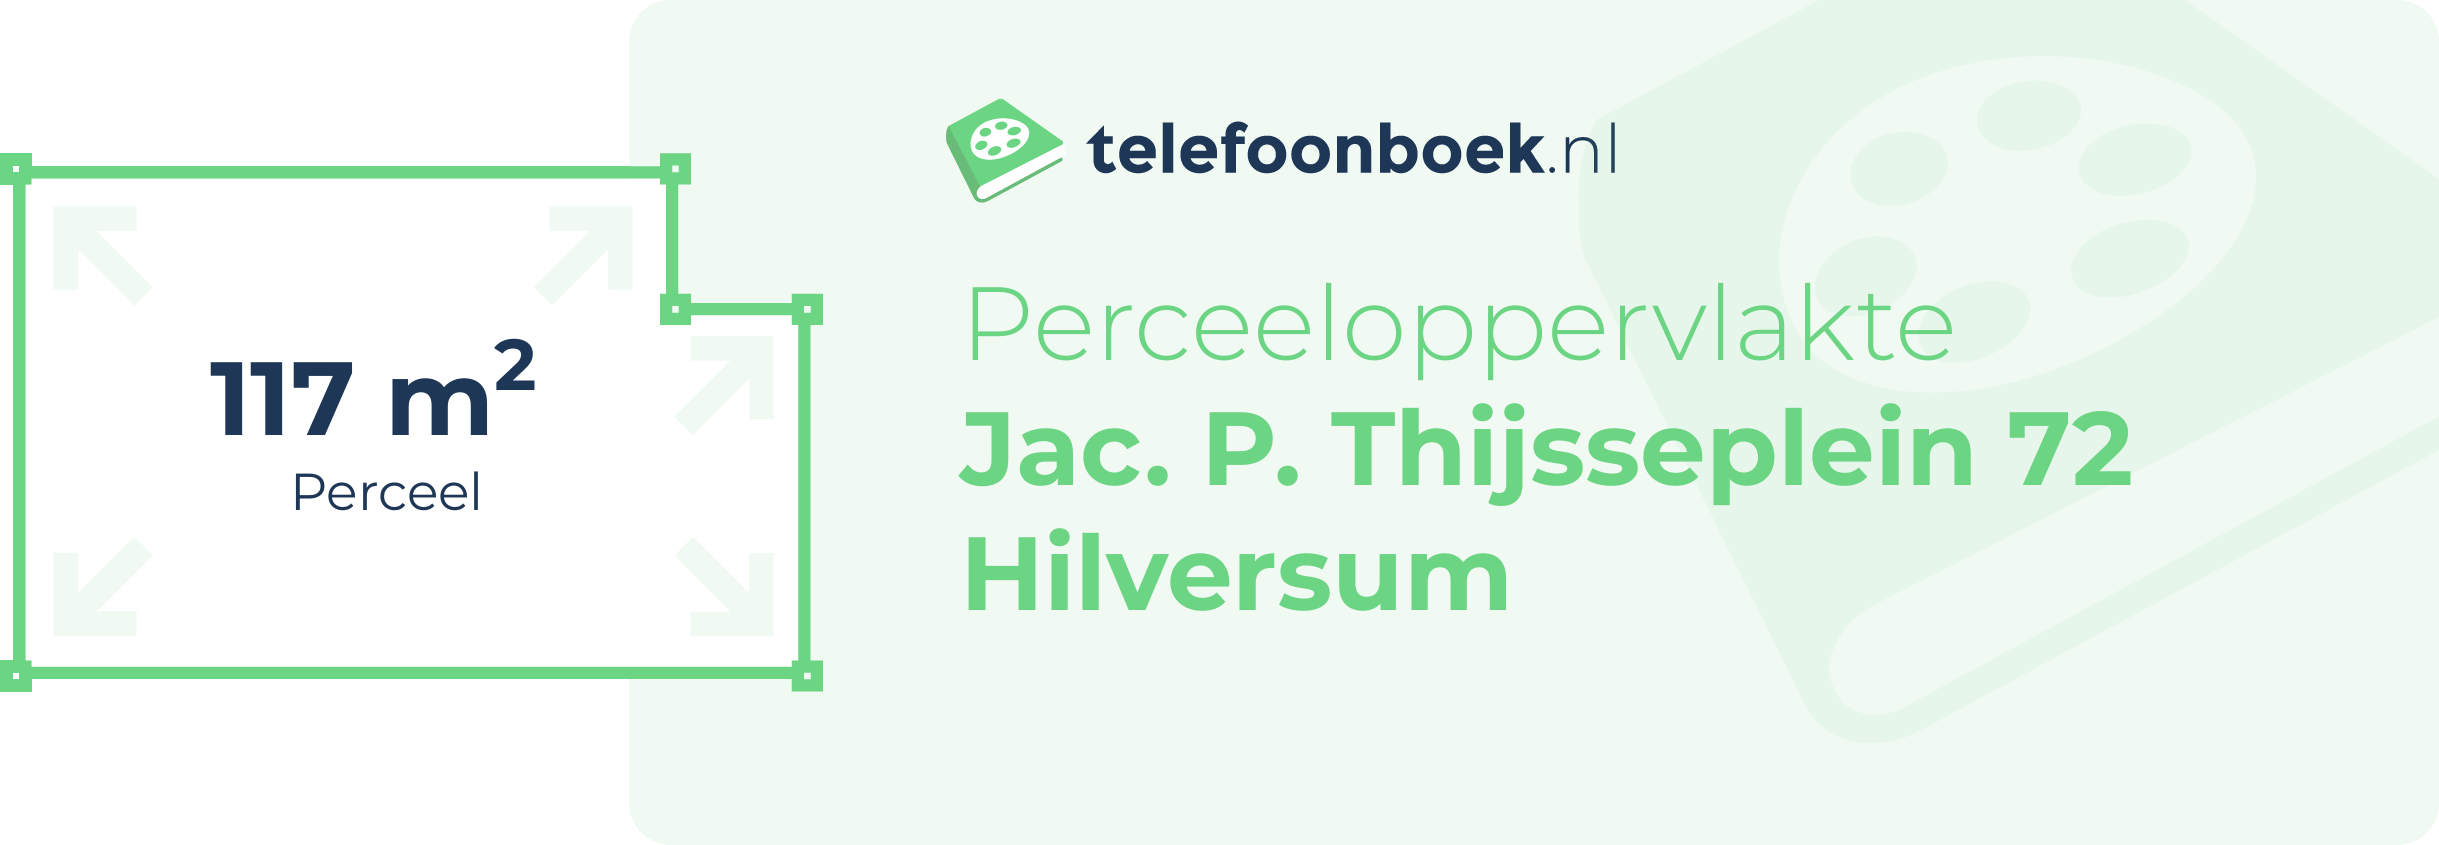 Perceeloppervlakte Jac. P. Thijsseplein 72 Hilversum